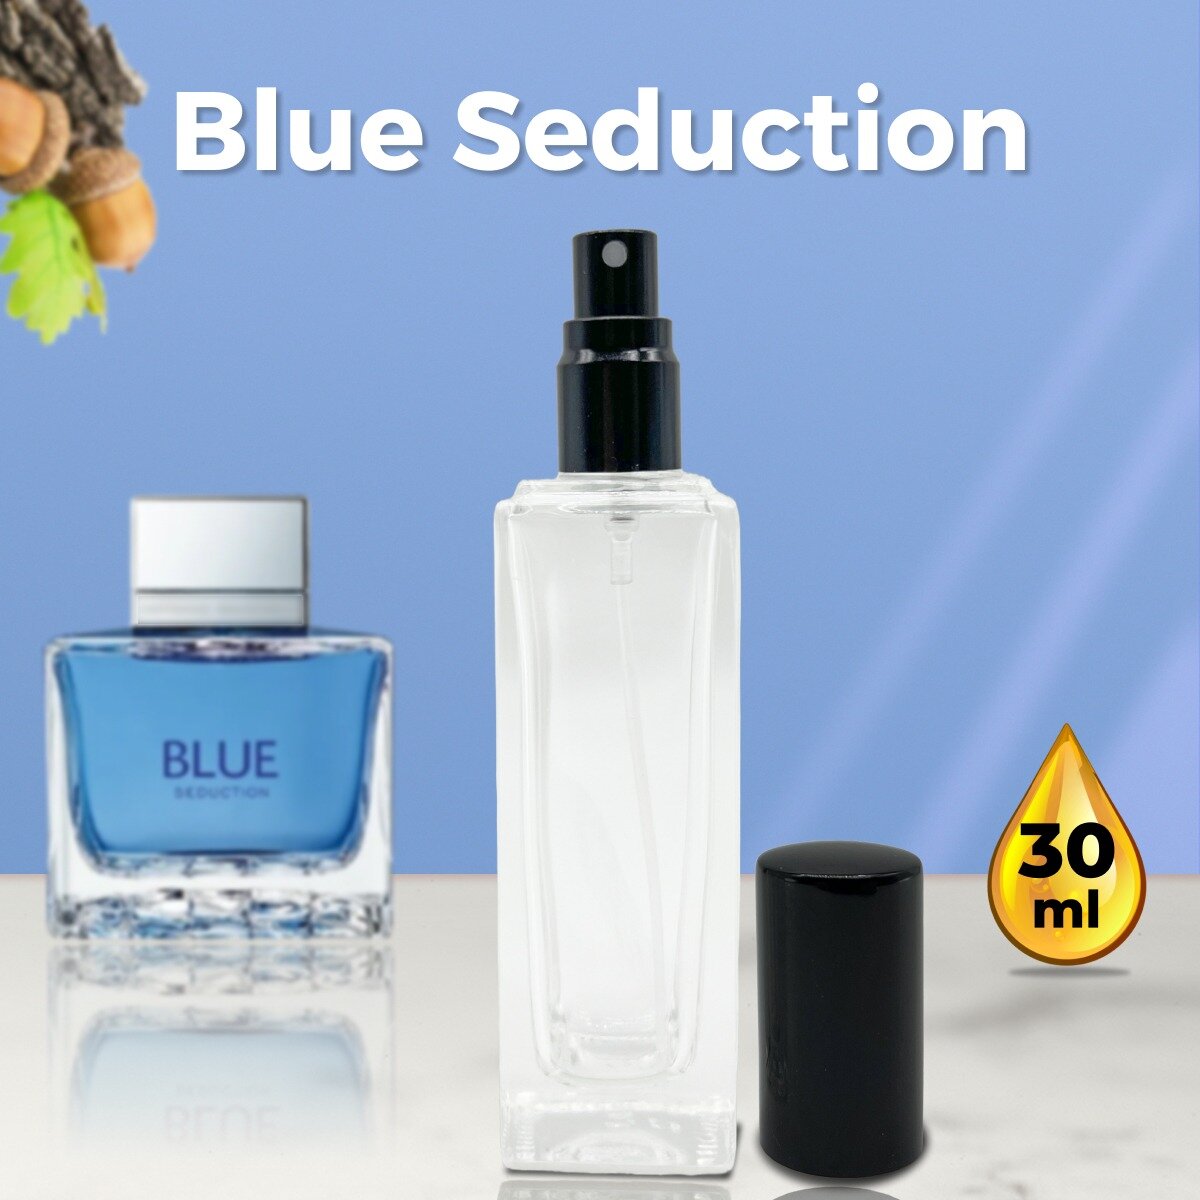 Gratus Parfum Blue Seduction Man духи мужские масляные 30 мл (спрей) + подарок